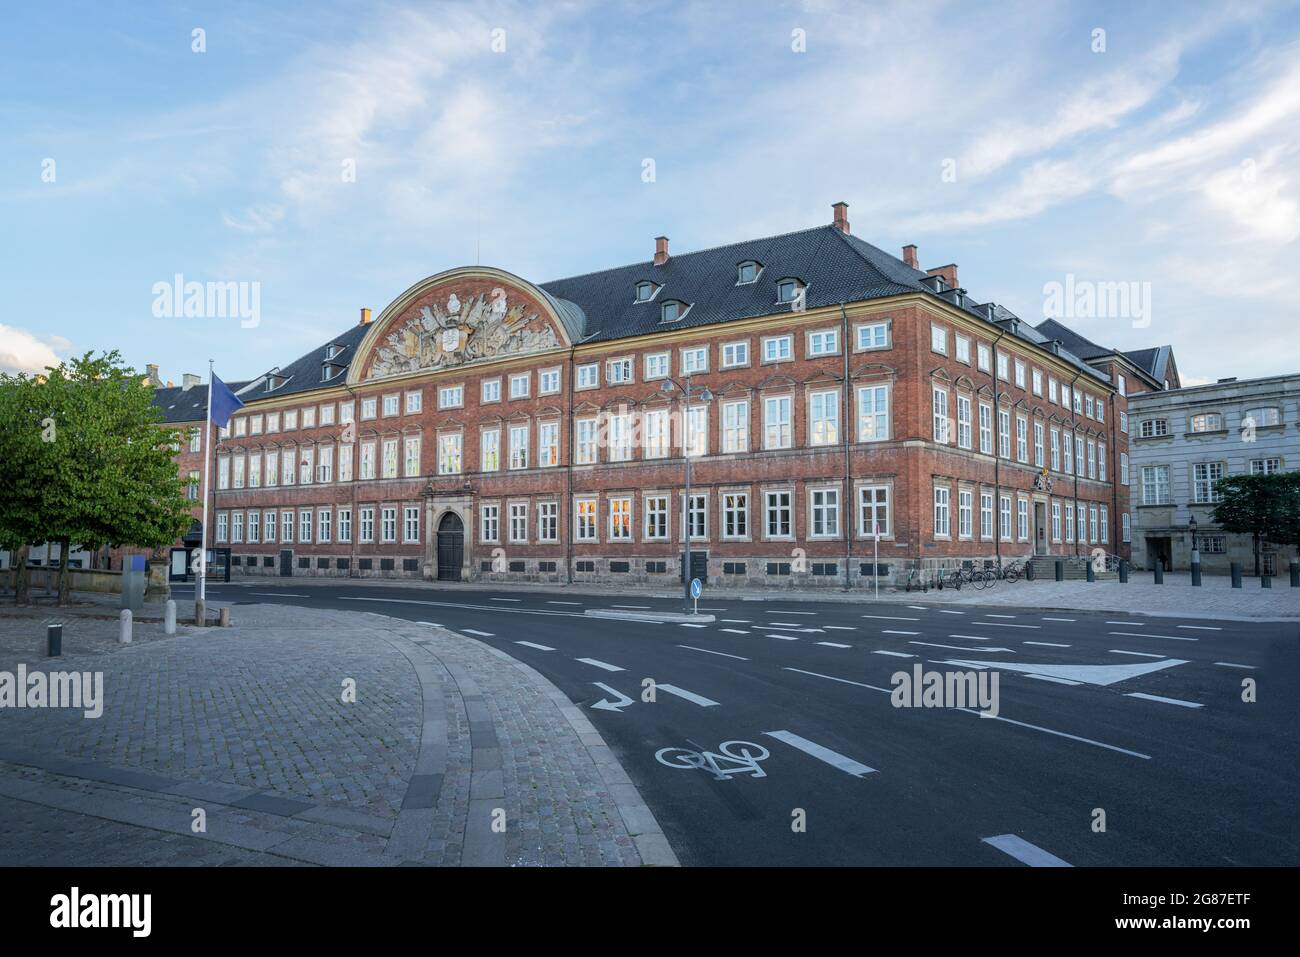 Ministry of Finance of Denmark - Copenhagen, Denmark Stock Photo